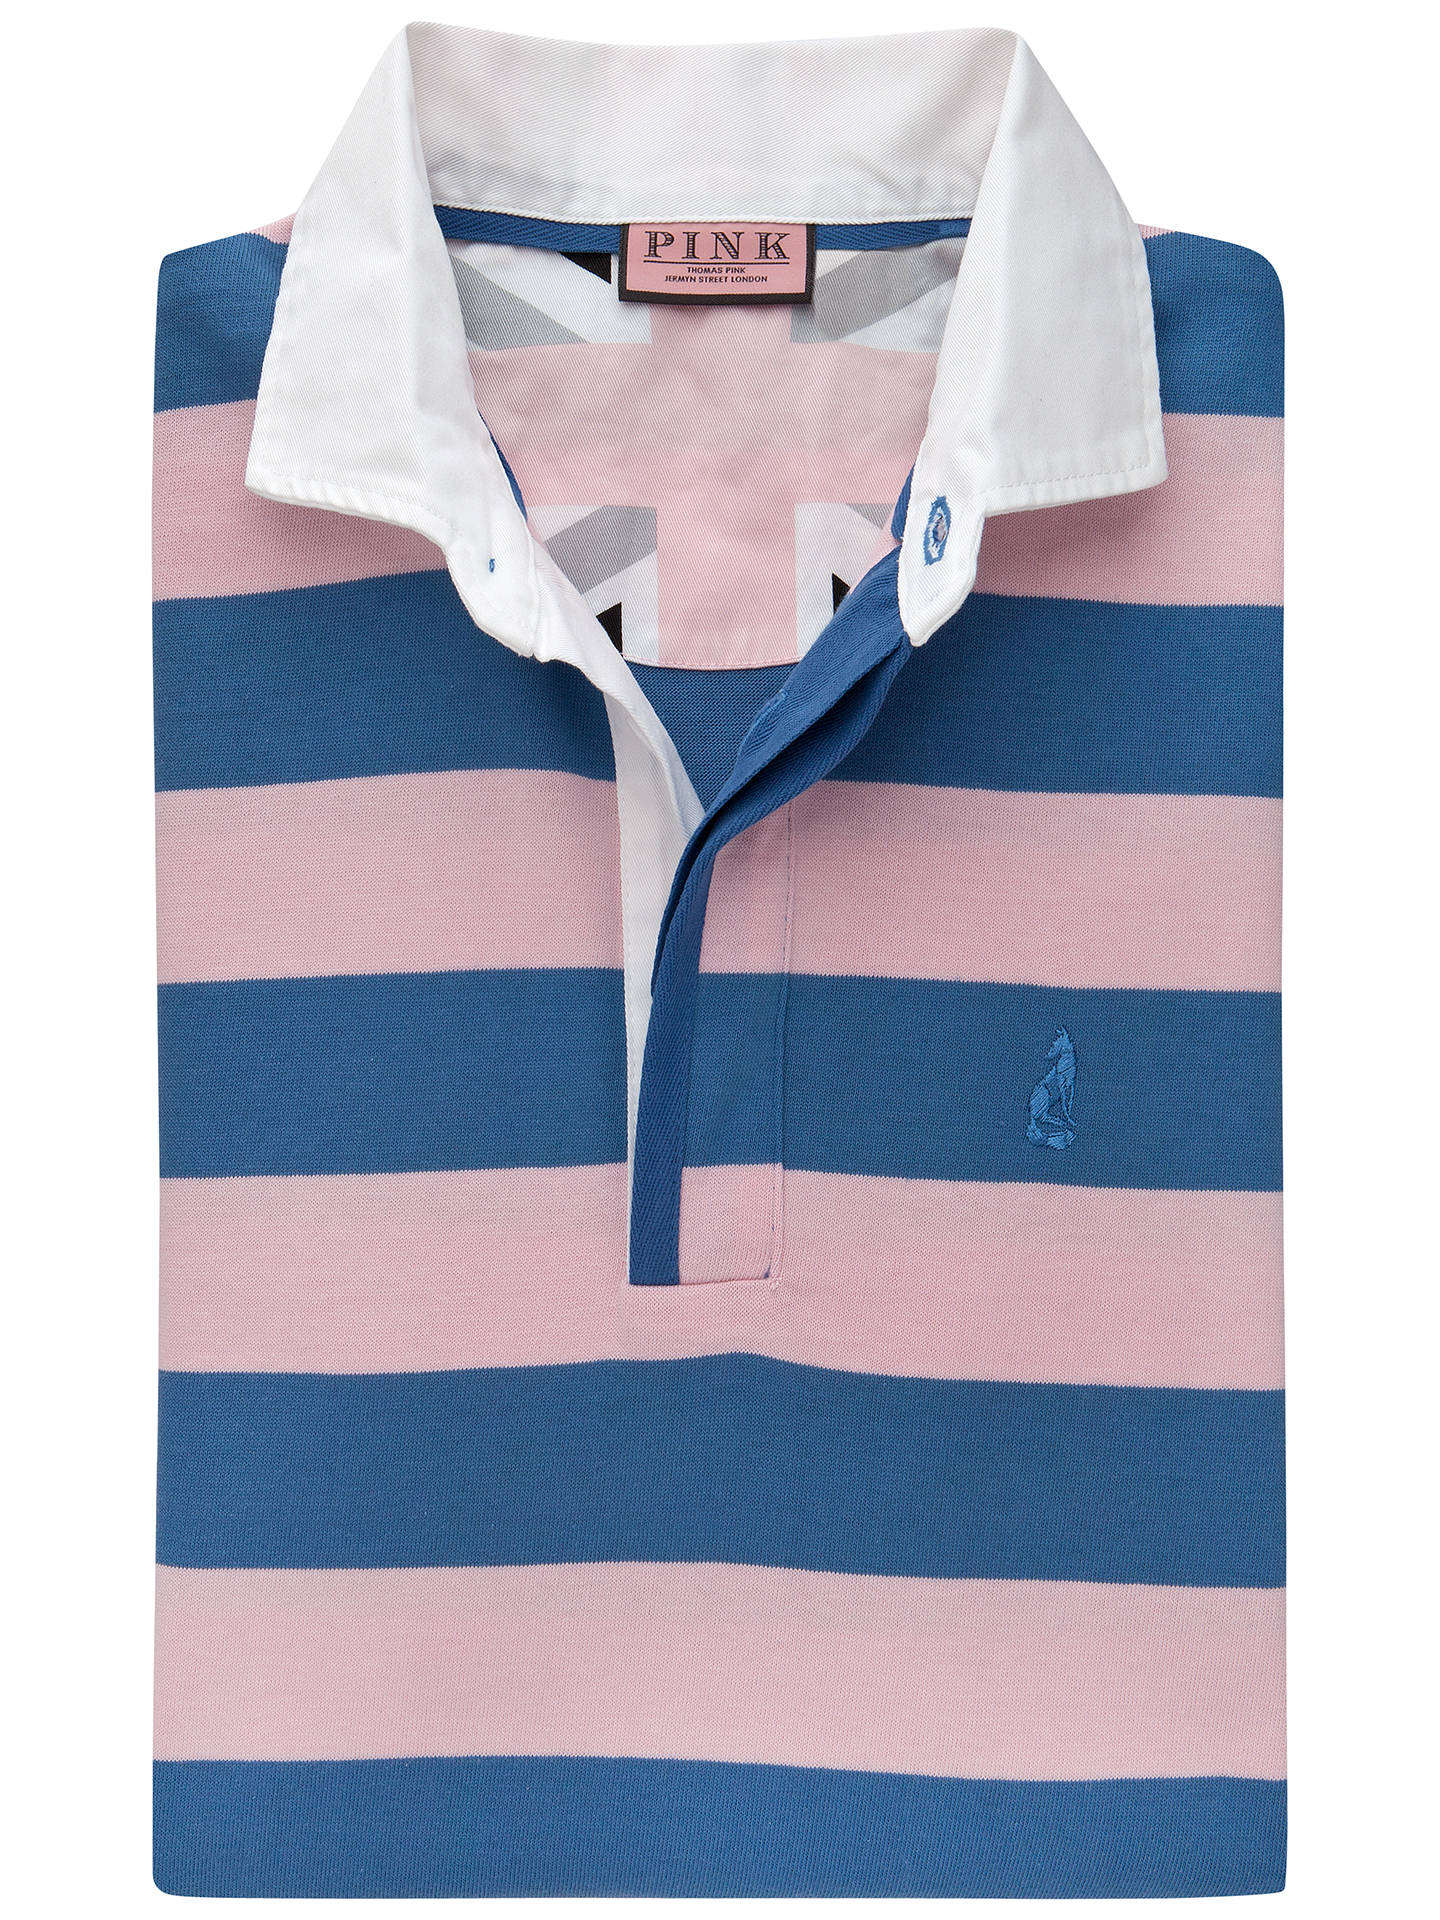 Thomas Pink Randle Stripe Rugby Shirt, Pink/Blue at John Lewis & Partners